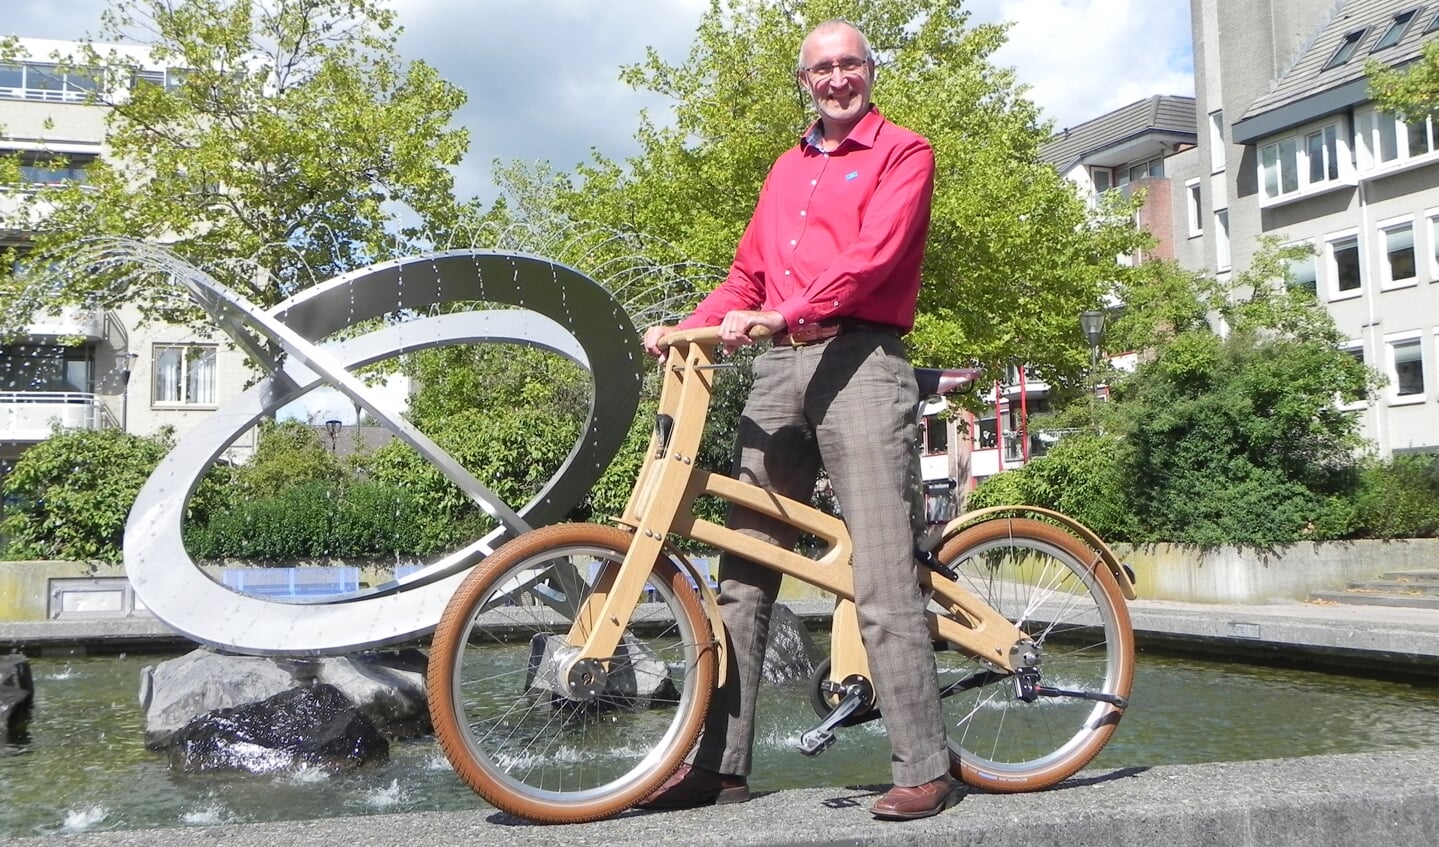 André fietst vaak op de enige echte houten Houtense fiets en komt daarmee op de leukste plekken.